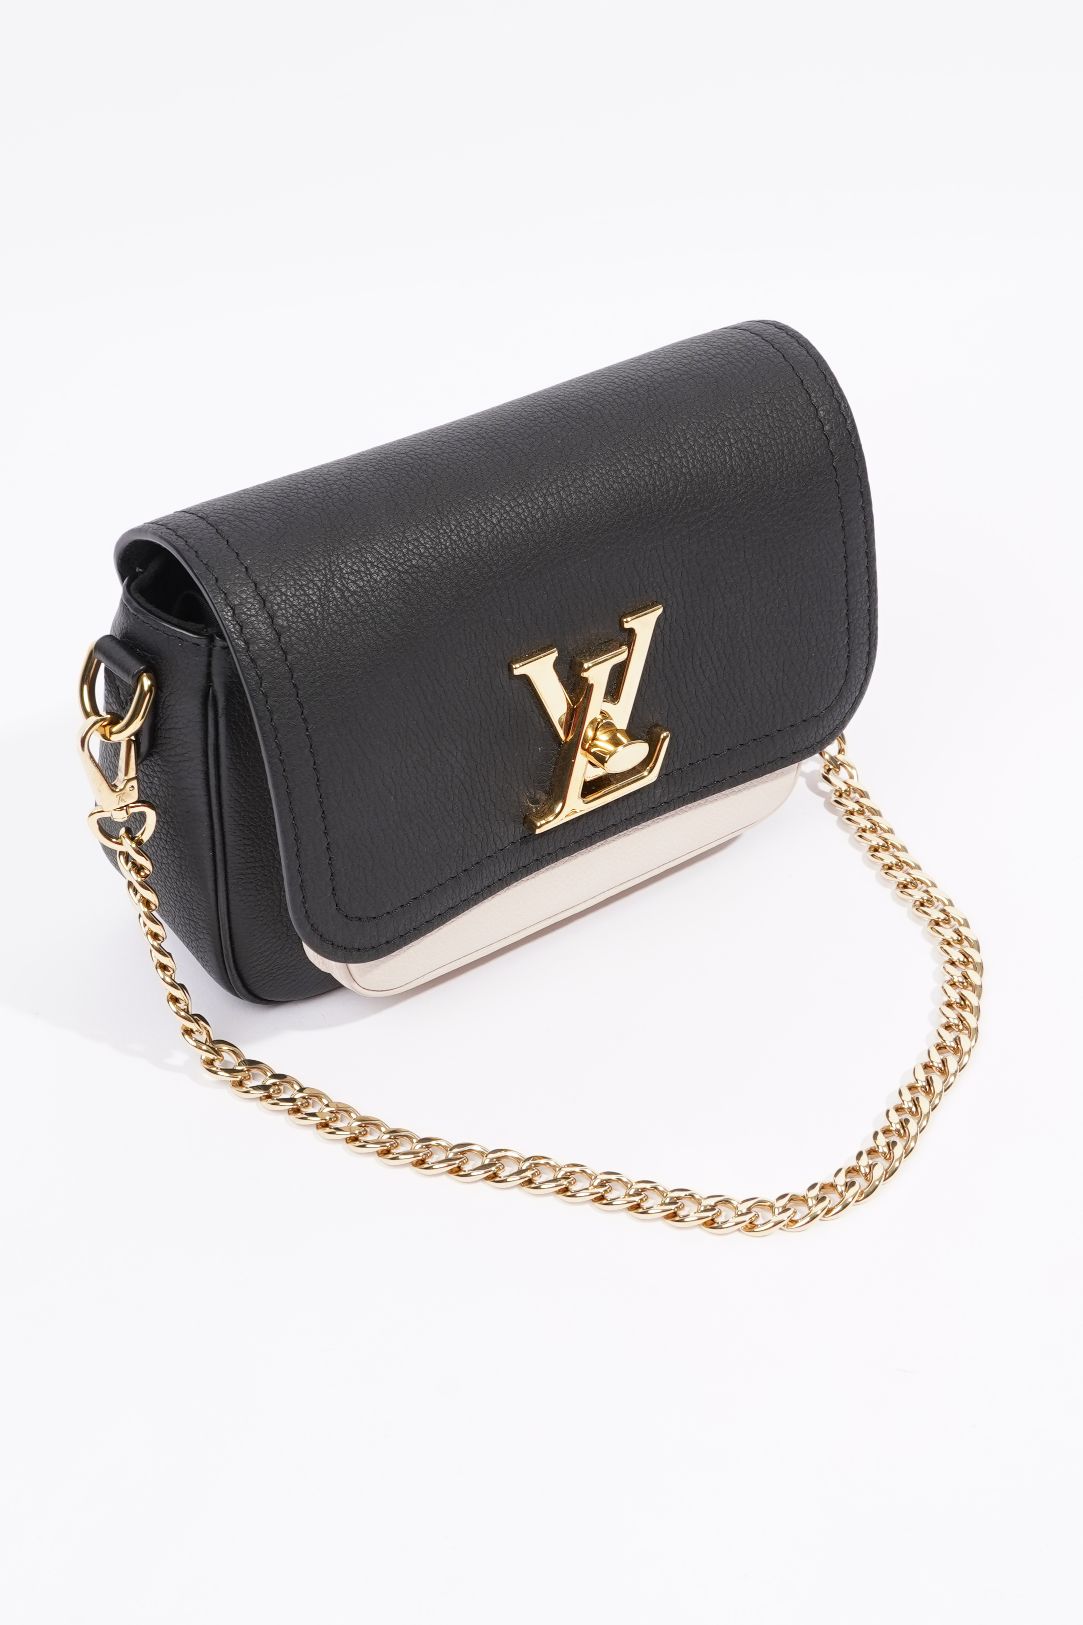 Louis Vuitton - Lockme Tender Bag - Asnières Green/milky White - Leather - Women - Luxury